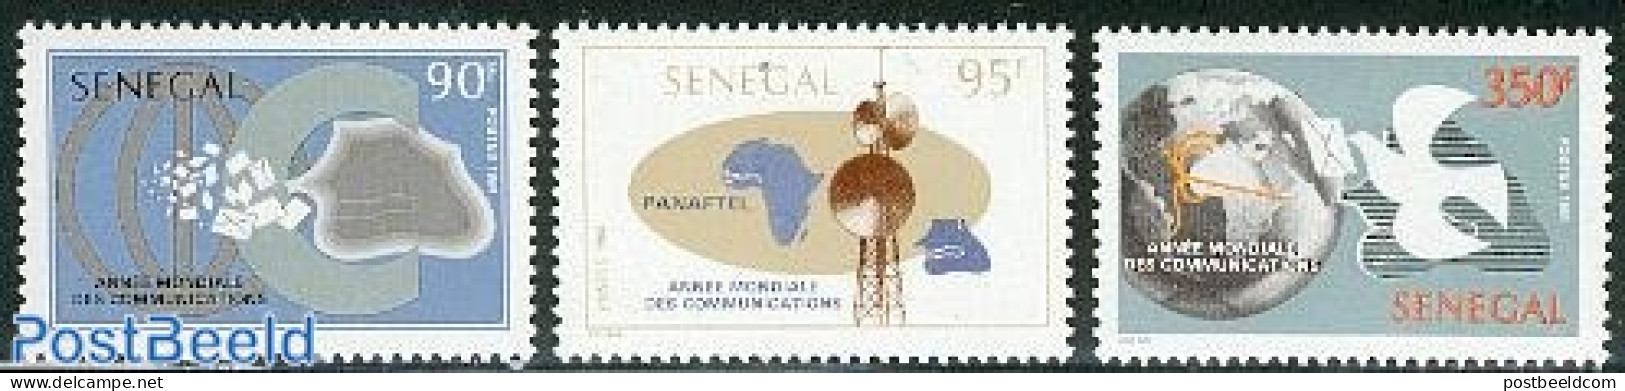 Senegal 1985 World Communication Year 3v, Mint NH, Science - Various - Int. Communication Year 1983 - Telecommunicatio.. - Télécom